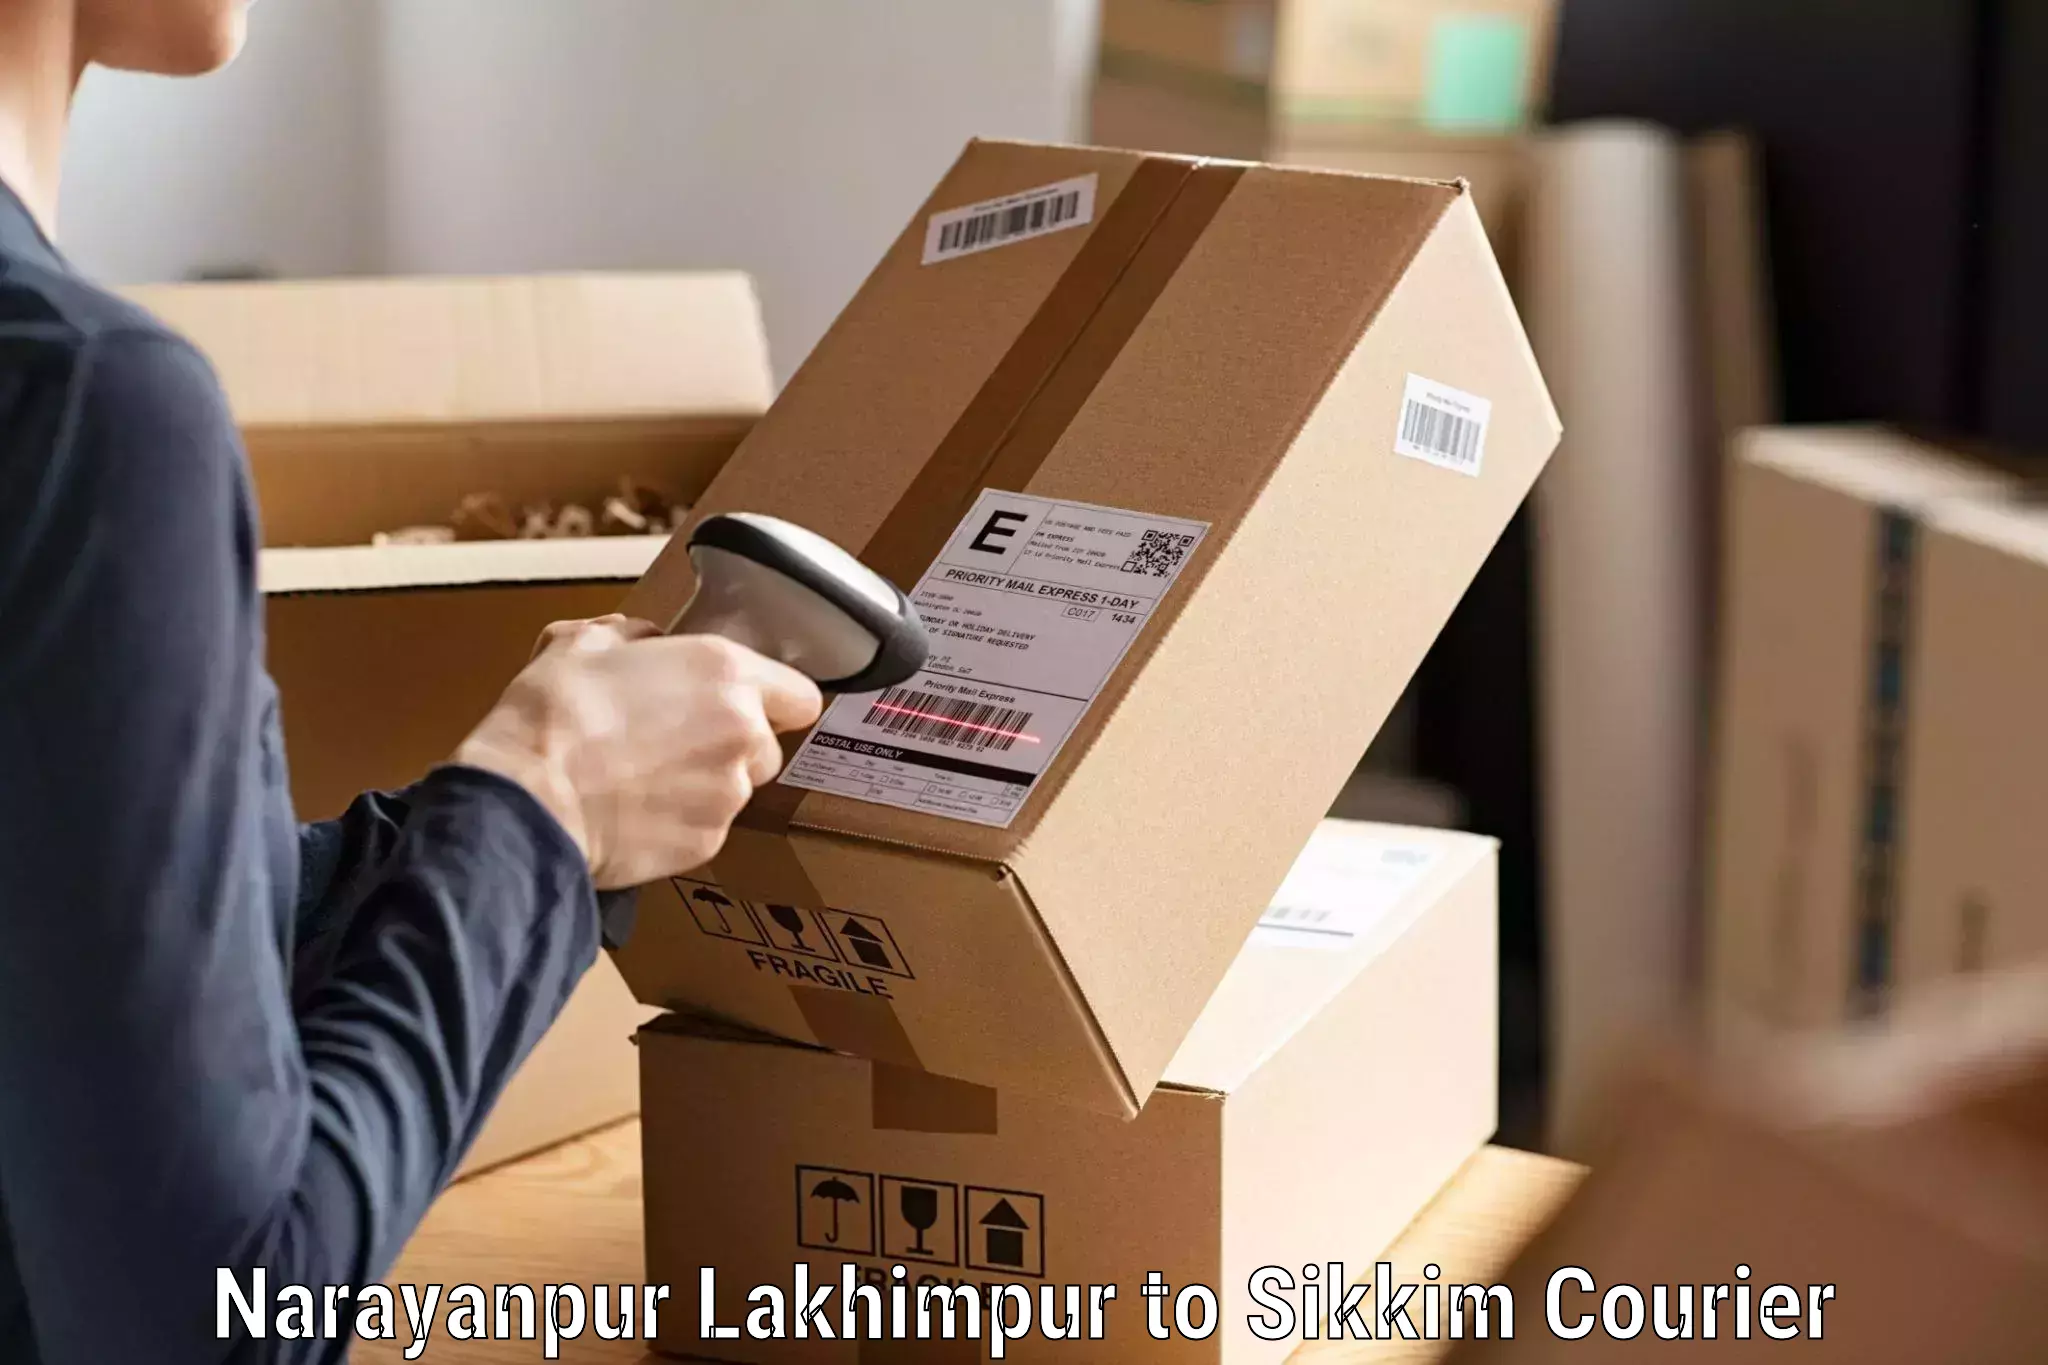 Tailored freight services Narayanpur Lakhimpur to Mangan